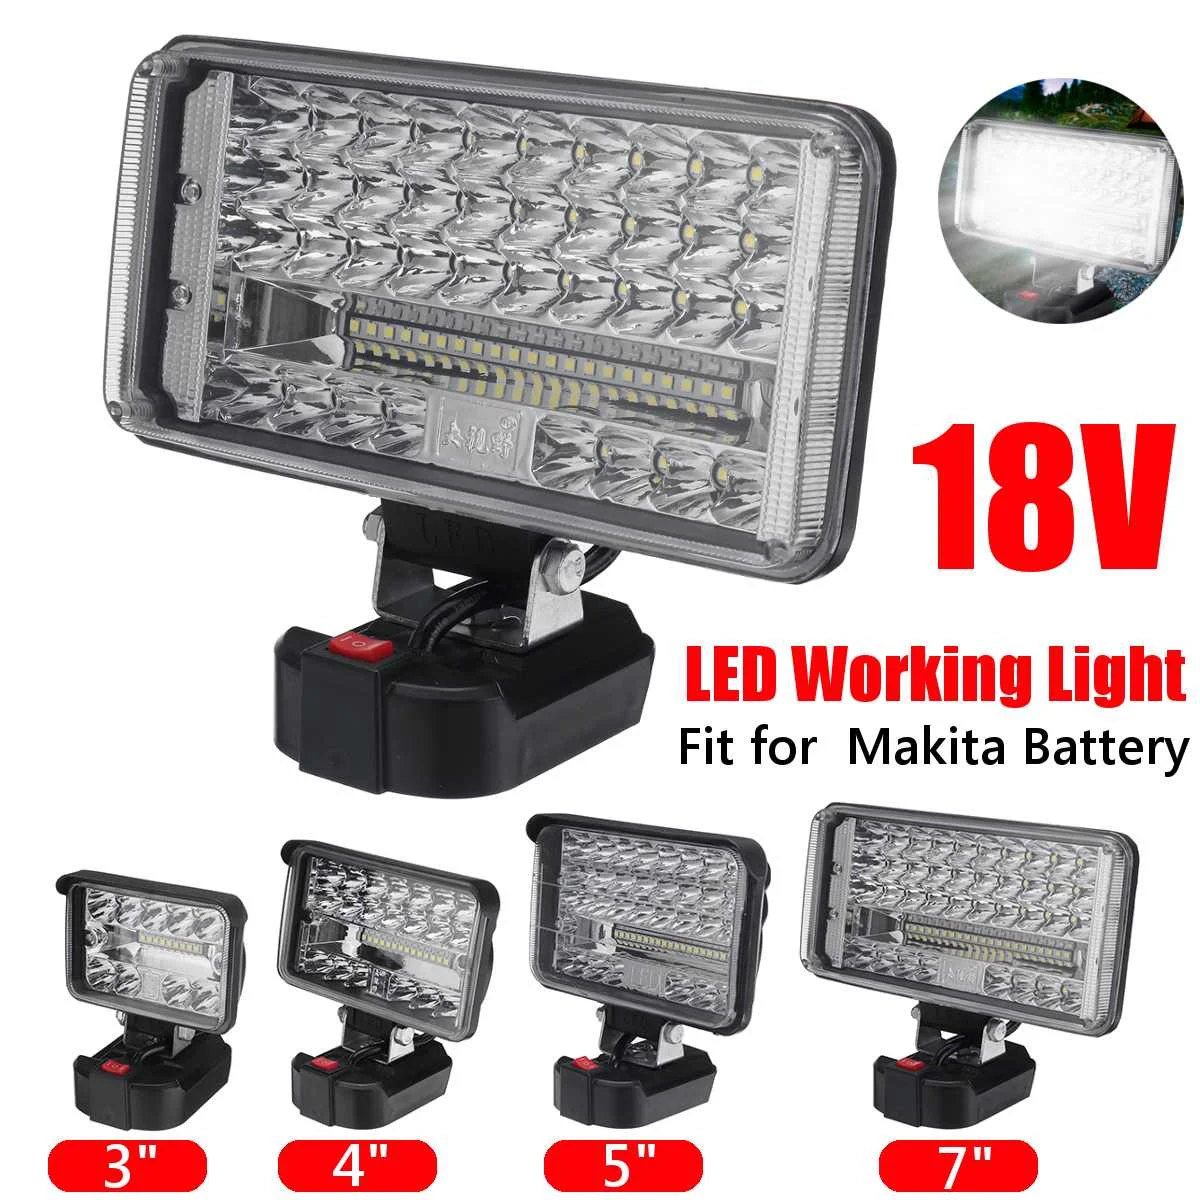 LED Taschenlampe Arbeitsleuchte Li-ion für Makita Akku 18V 180W Strahler Licht